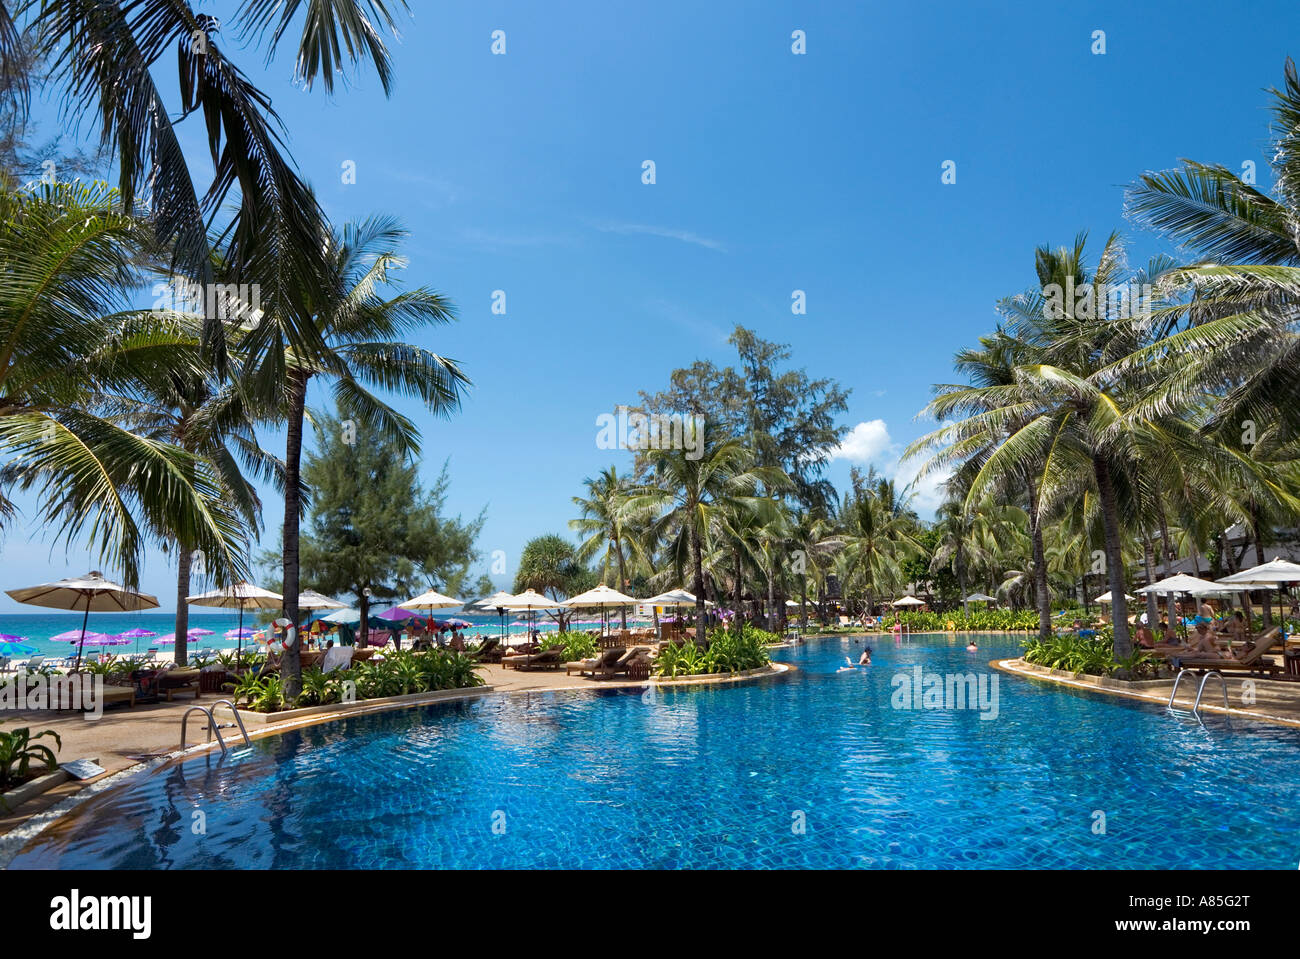 Pool at the Kathathani Beach Resort, Phuket, Thailand Stock Photo